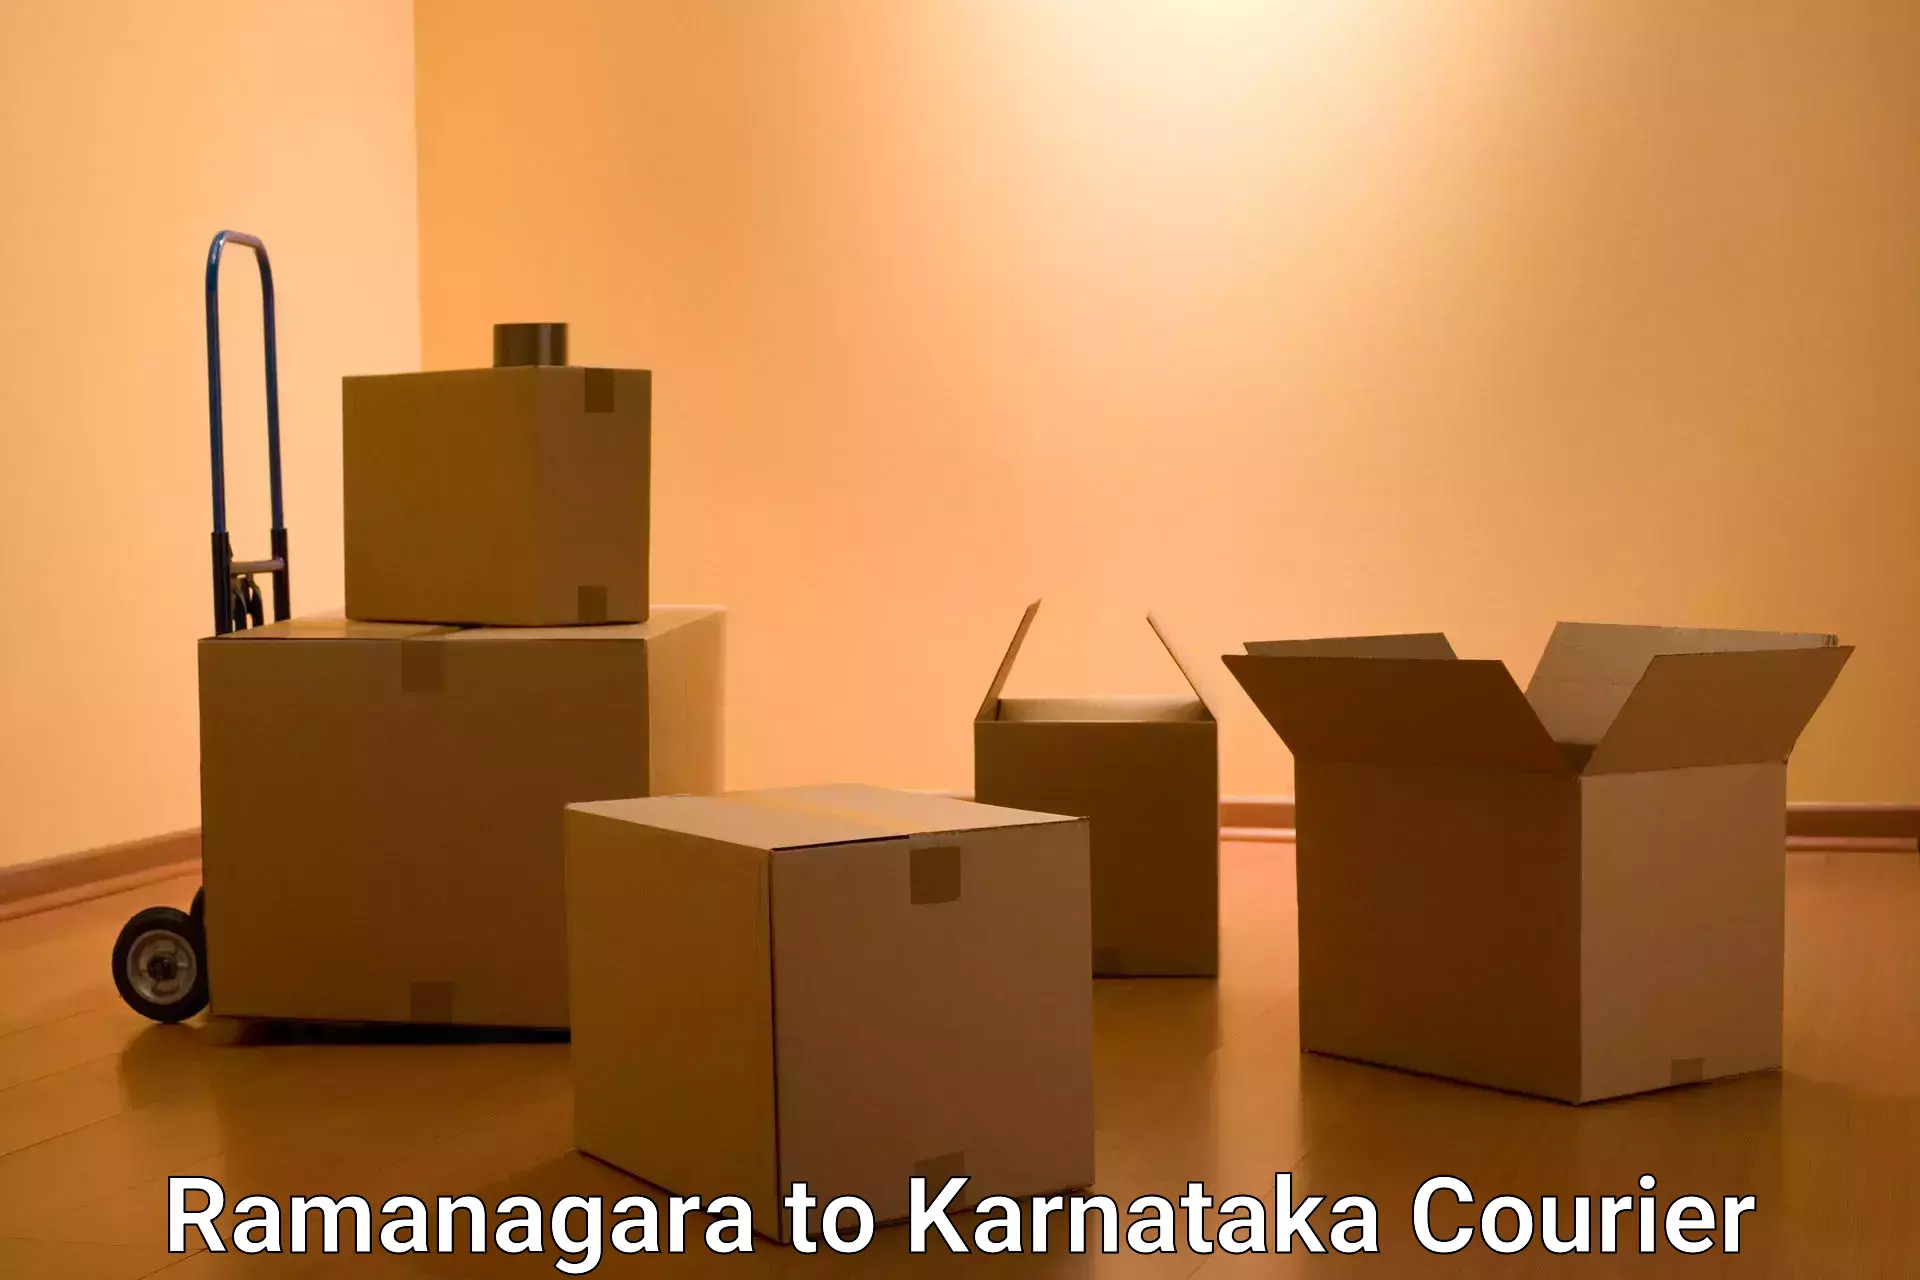 Express delivery network Ramanagara to Karnataka